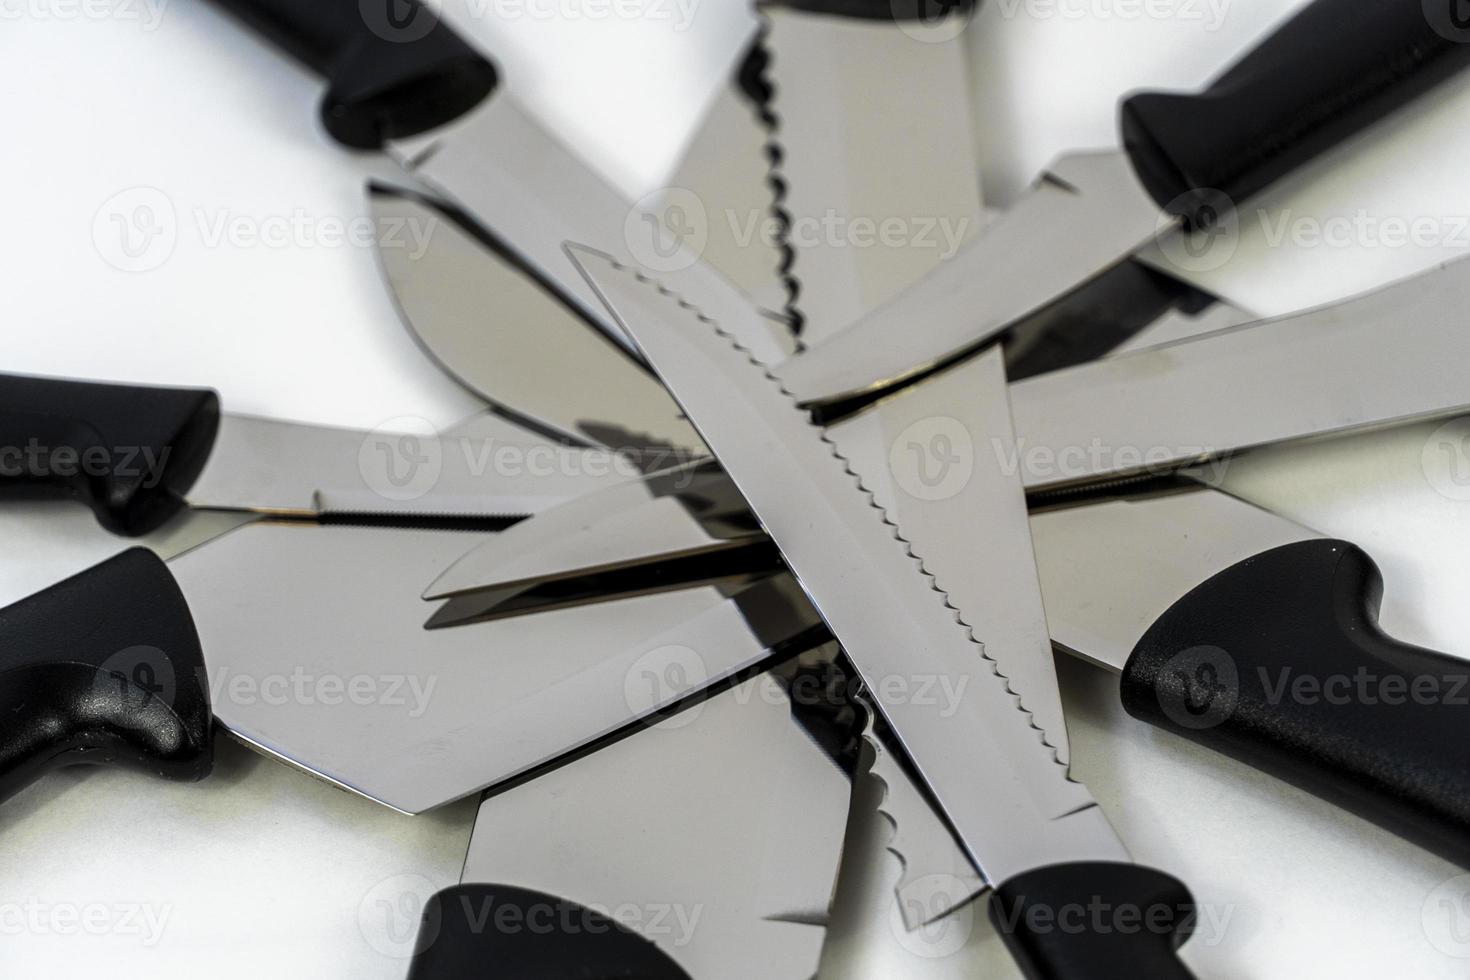 stål kök knivar, isolerat på vit, metall kök knivar, mexico foto